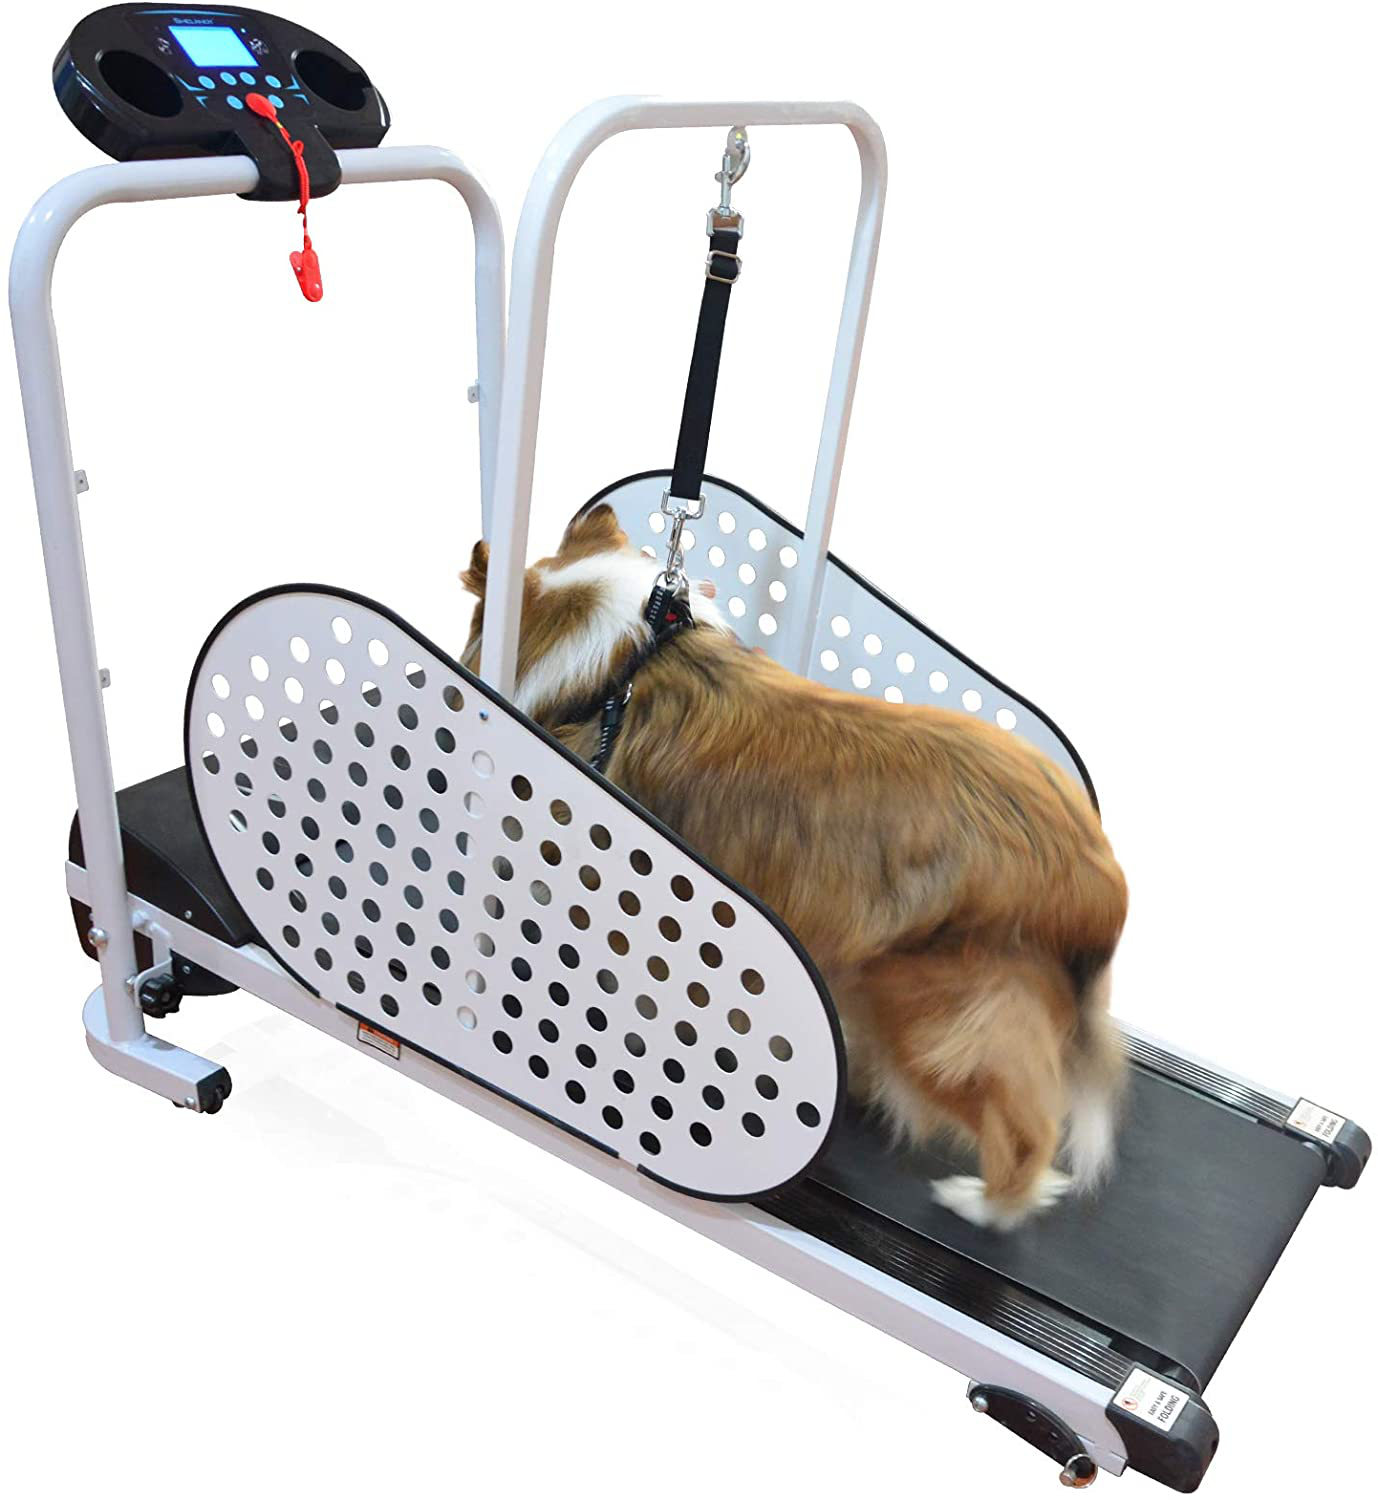 Techtongda Dog Proform Treadmill Pet Exercise Equipment for Canine Running 110V